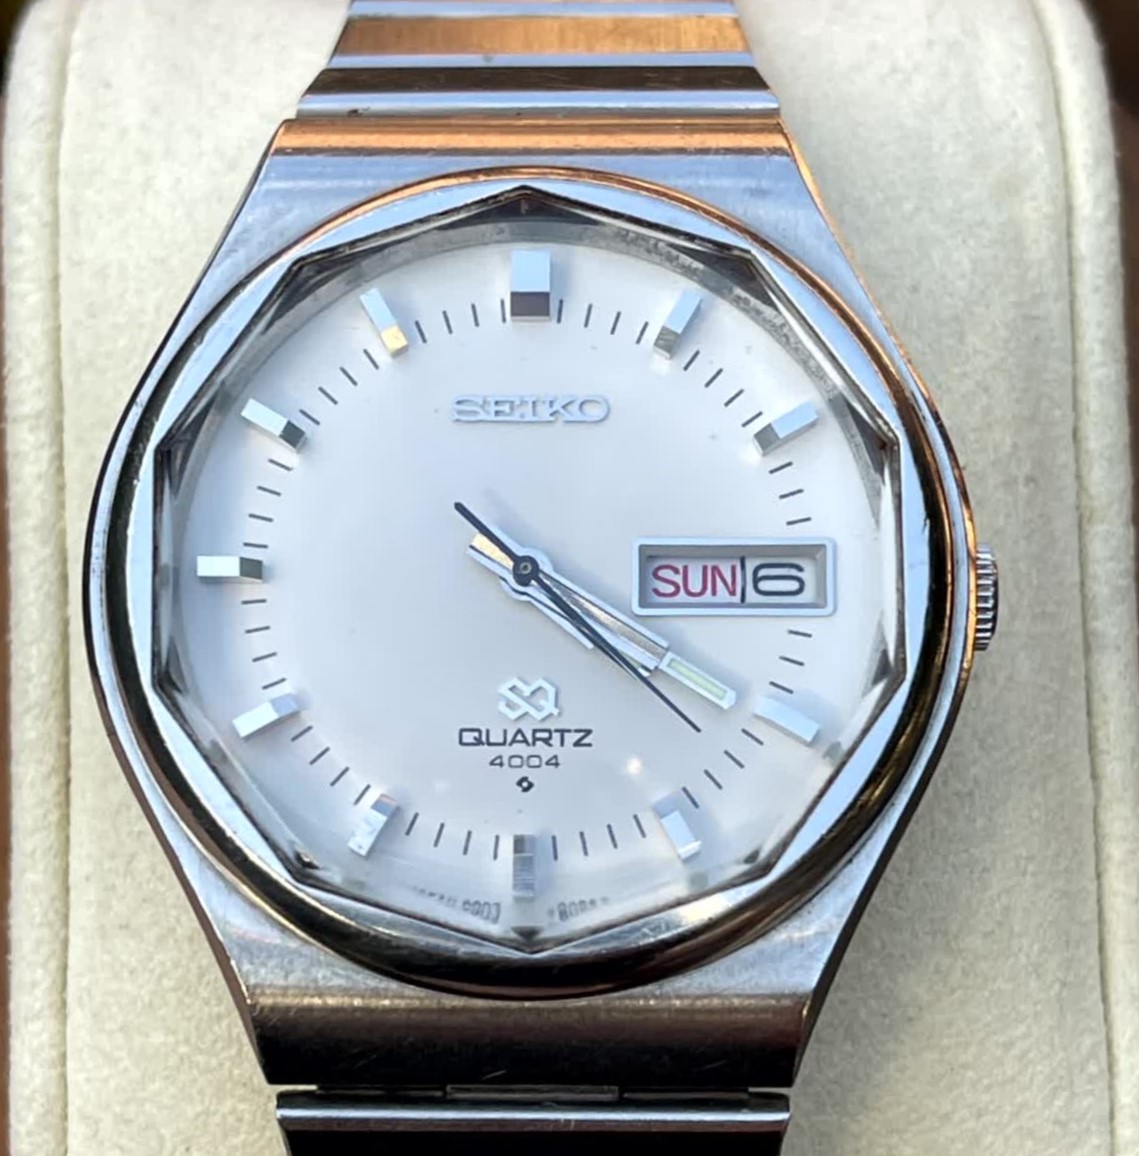 1976 Seiko SQ 4004 Quartz Vintage Watch - Chrono Collect